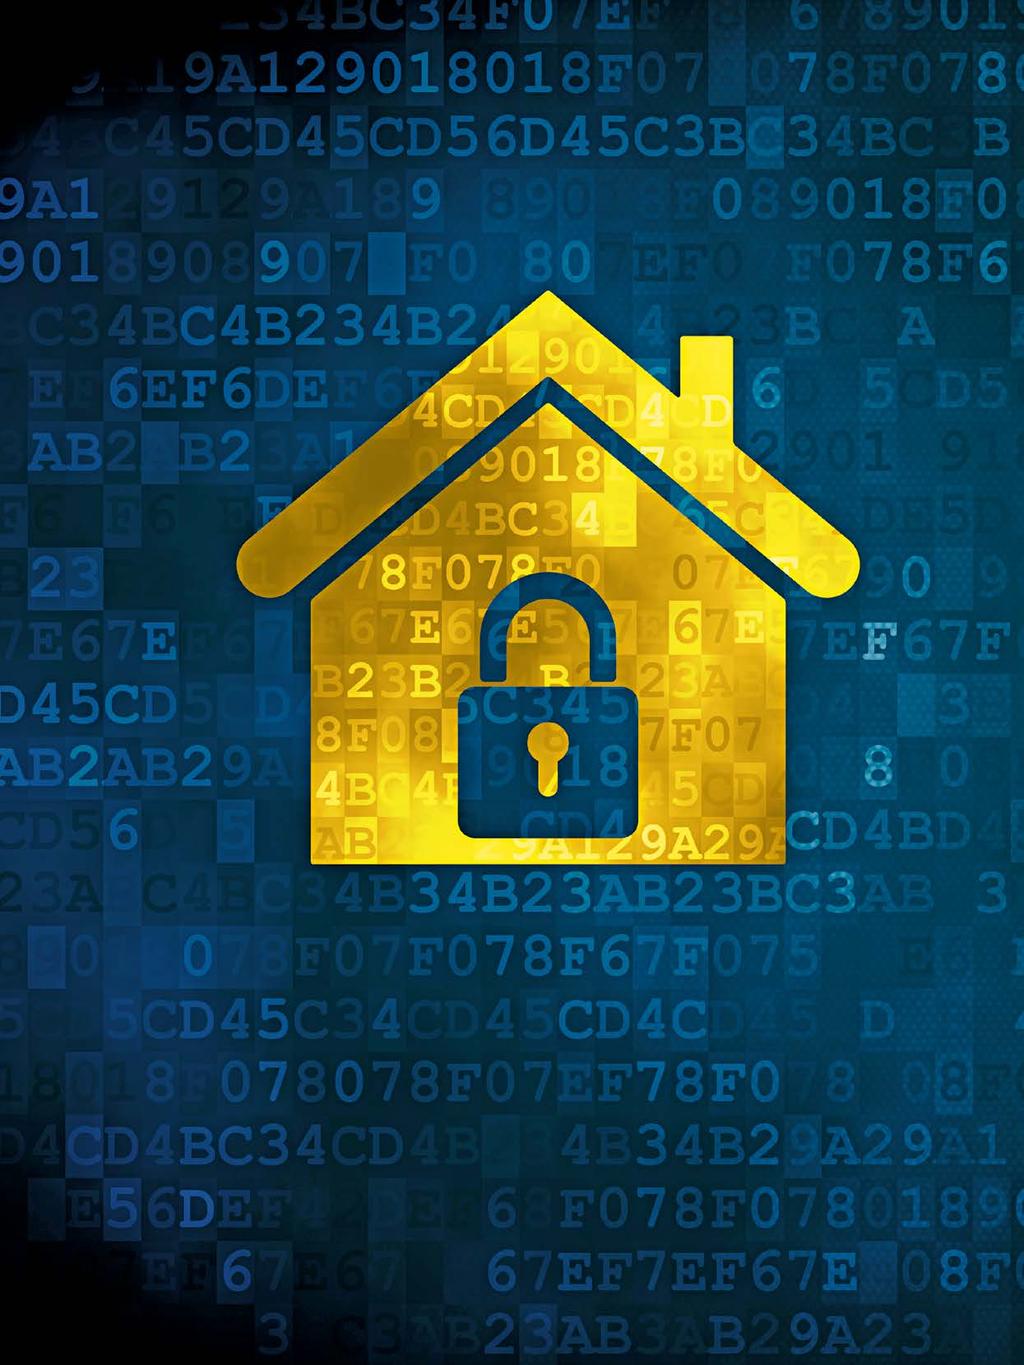 28 VERMARKTUNG & MANAGEMENT I TITELTHEMA Das müssen Immobilienfirmen im Datenschutz jetzt umsetzen 1. Datenschutzerklärung neu fassen 2. Webseite verschlüsseln 3. Kontaktformular anpassen 4.